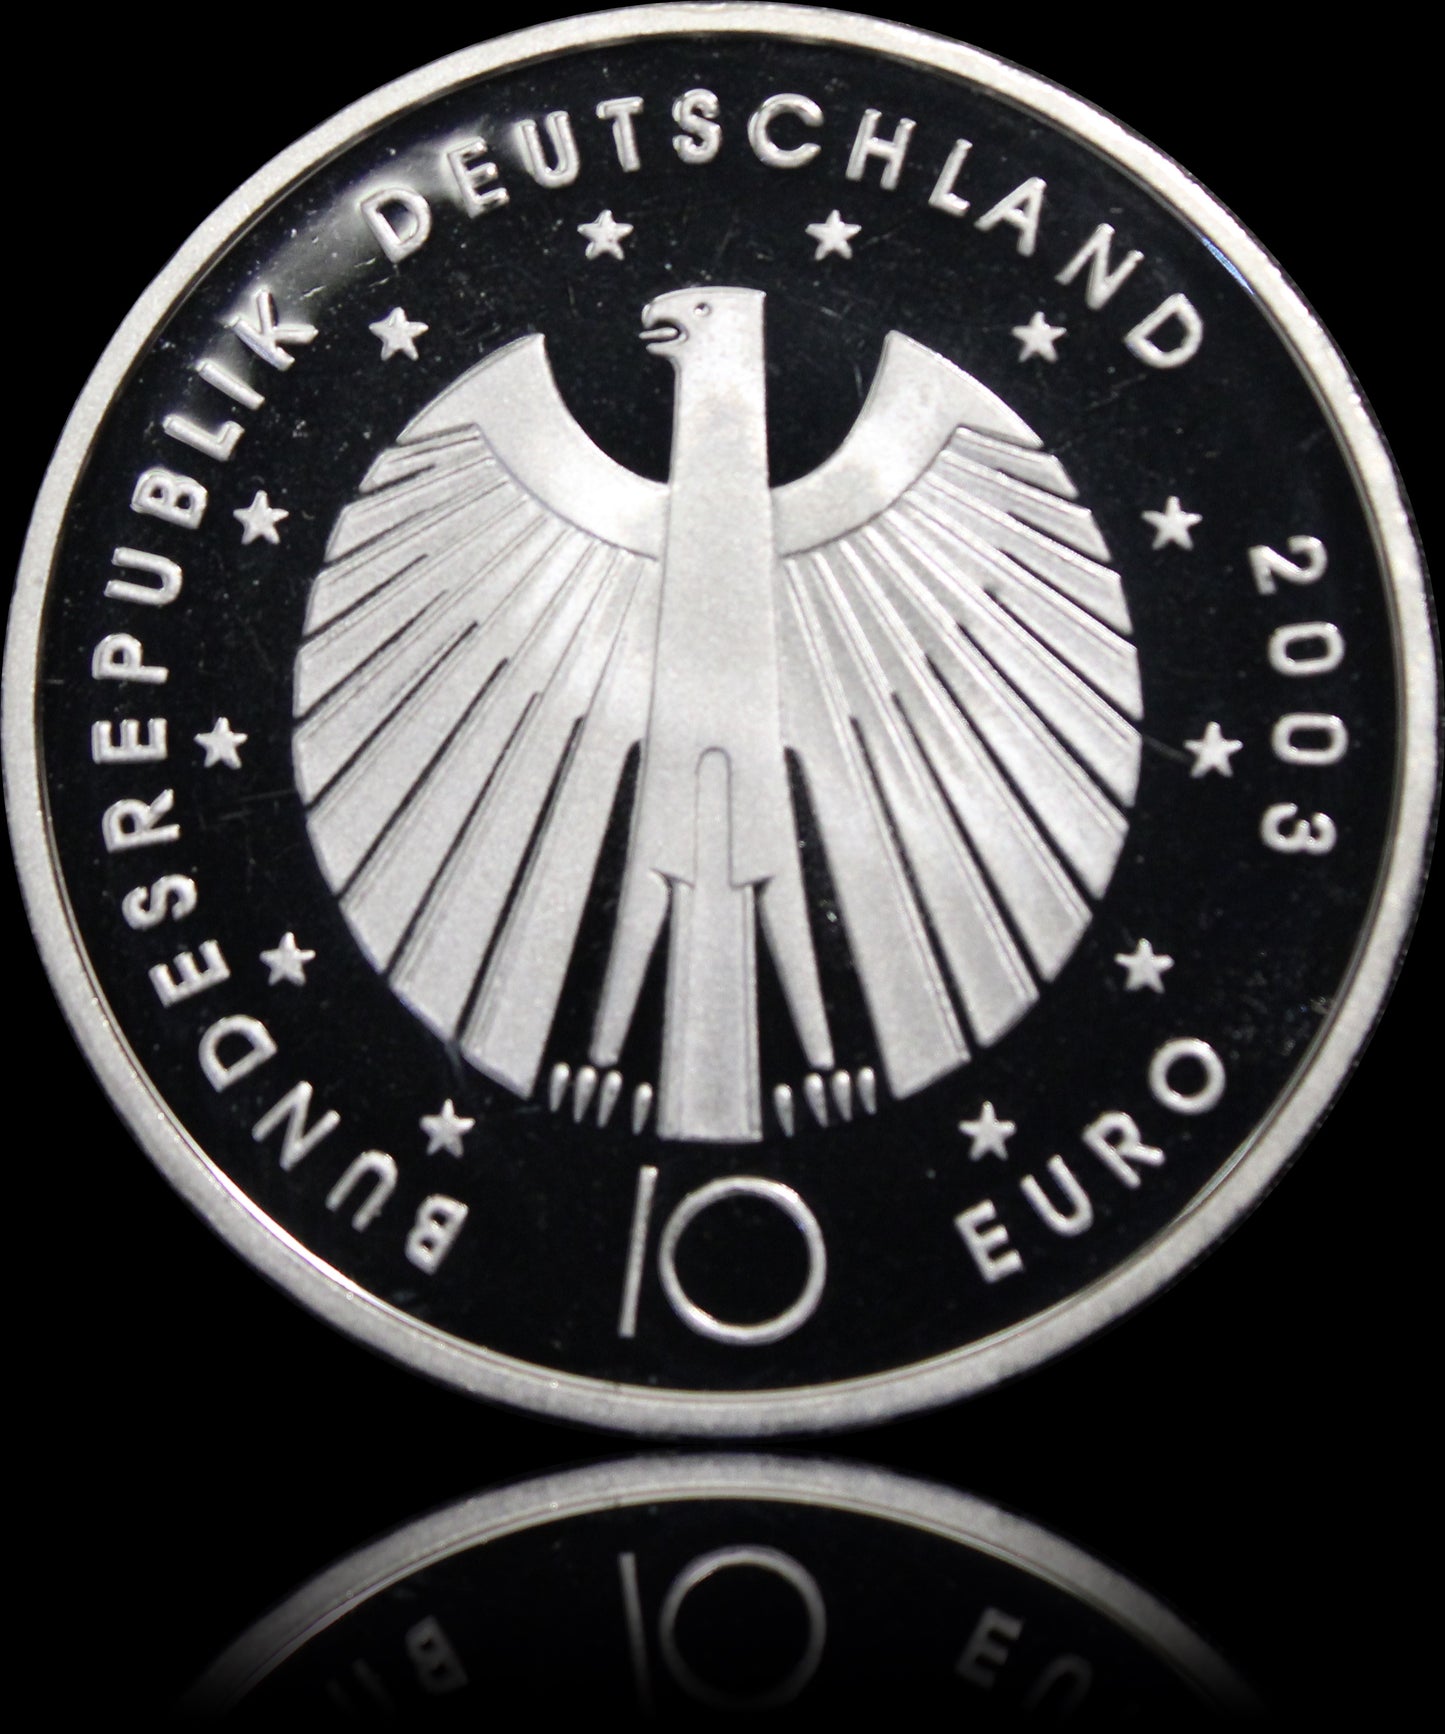 FIFA FUSSBALL WM 2006 - 1. AUSGABE, Serie 10 € Silber Gedenkmünzen Deutschland, Spiegelglanz, 2003